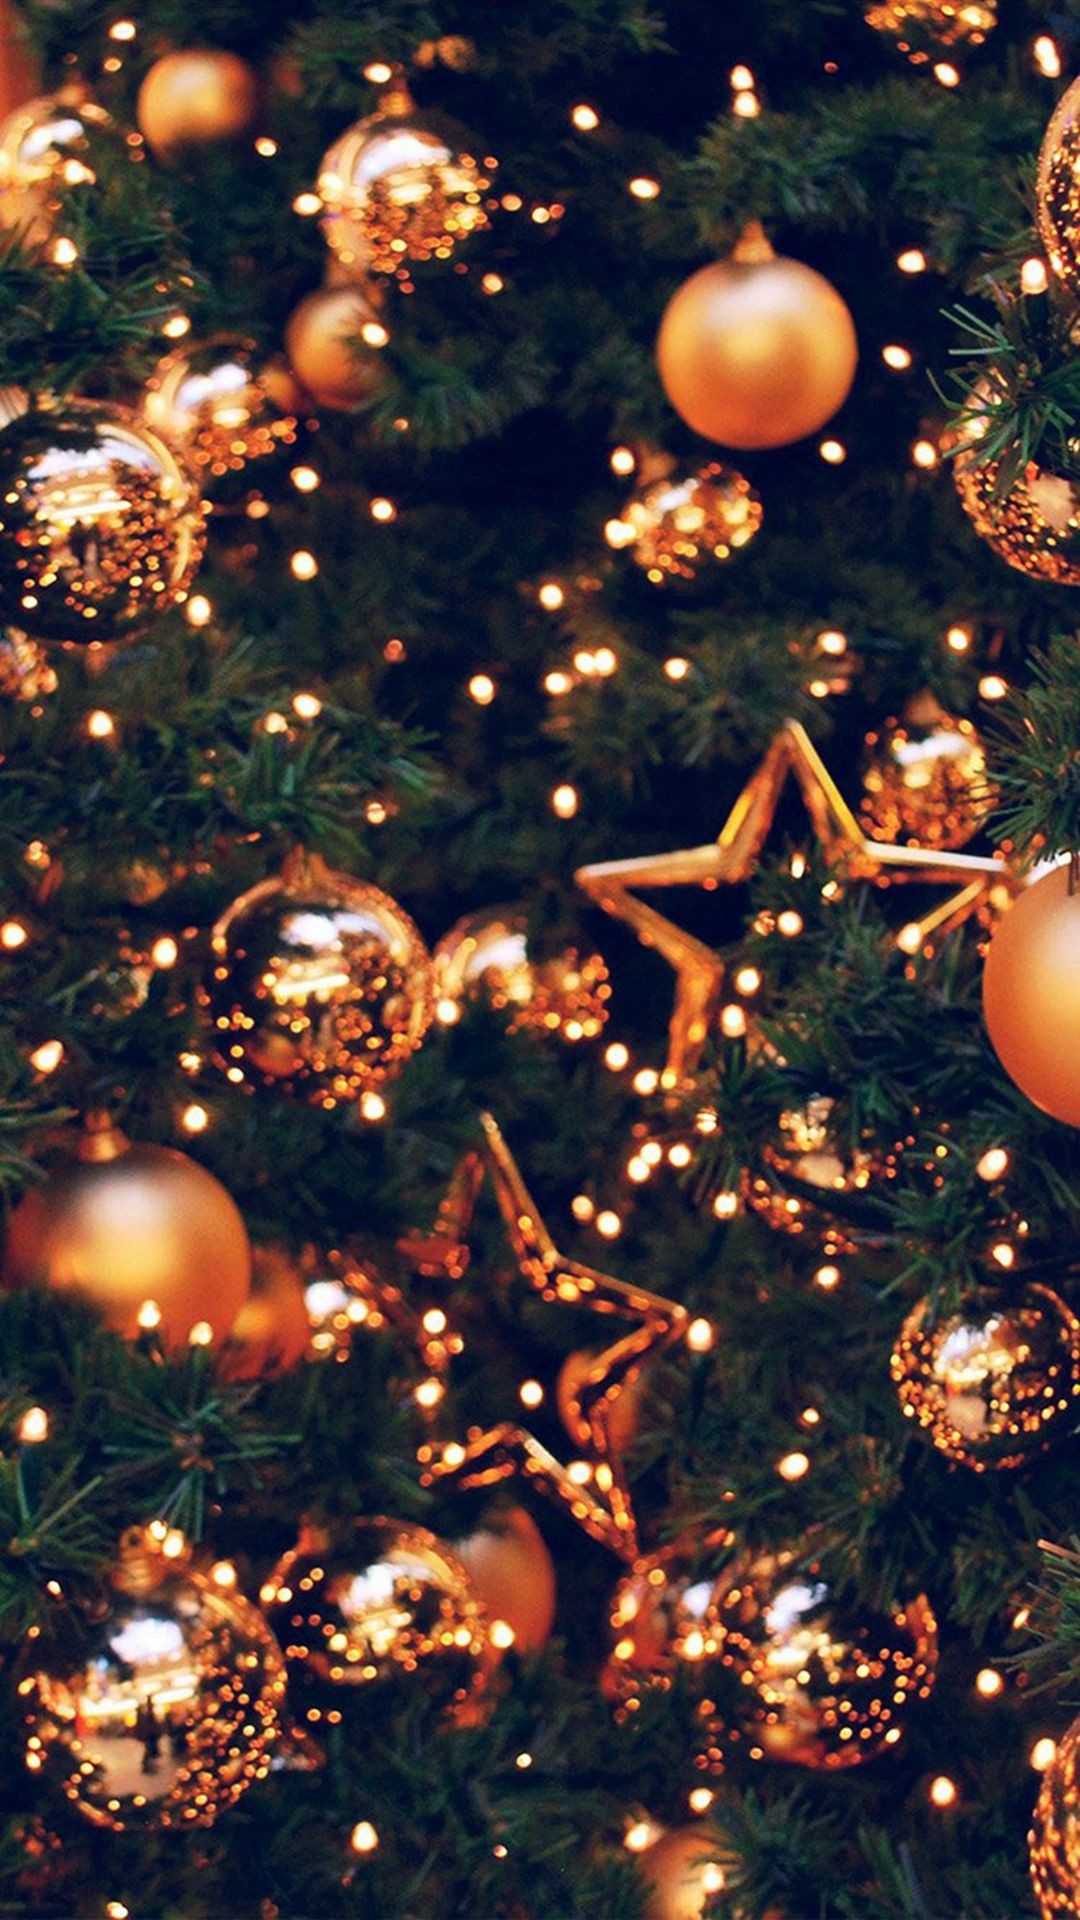 クリスマス壁紙tumblr,クリスマスオーナメント,クリスマスツリー,クリスマスの飾り,クリスマス,木